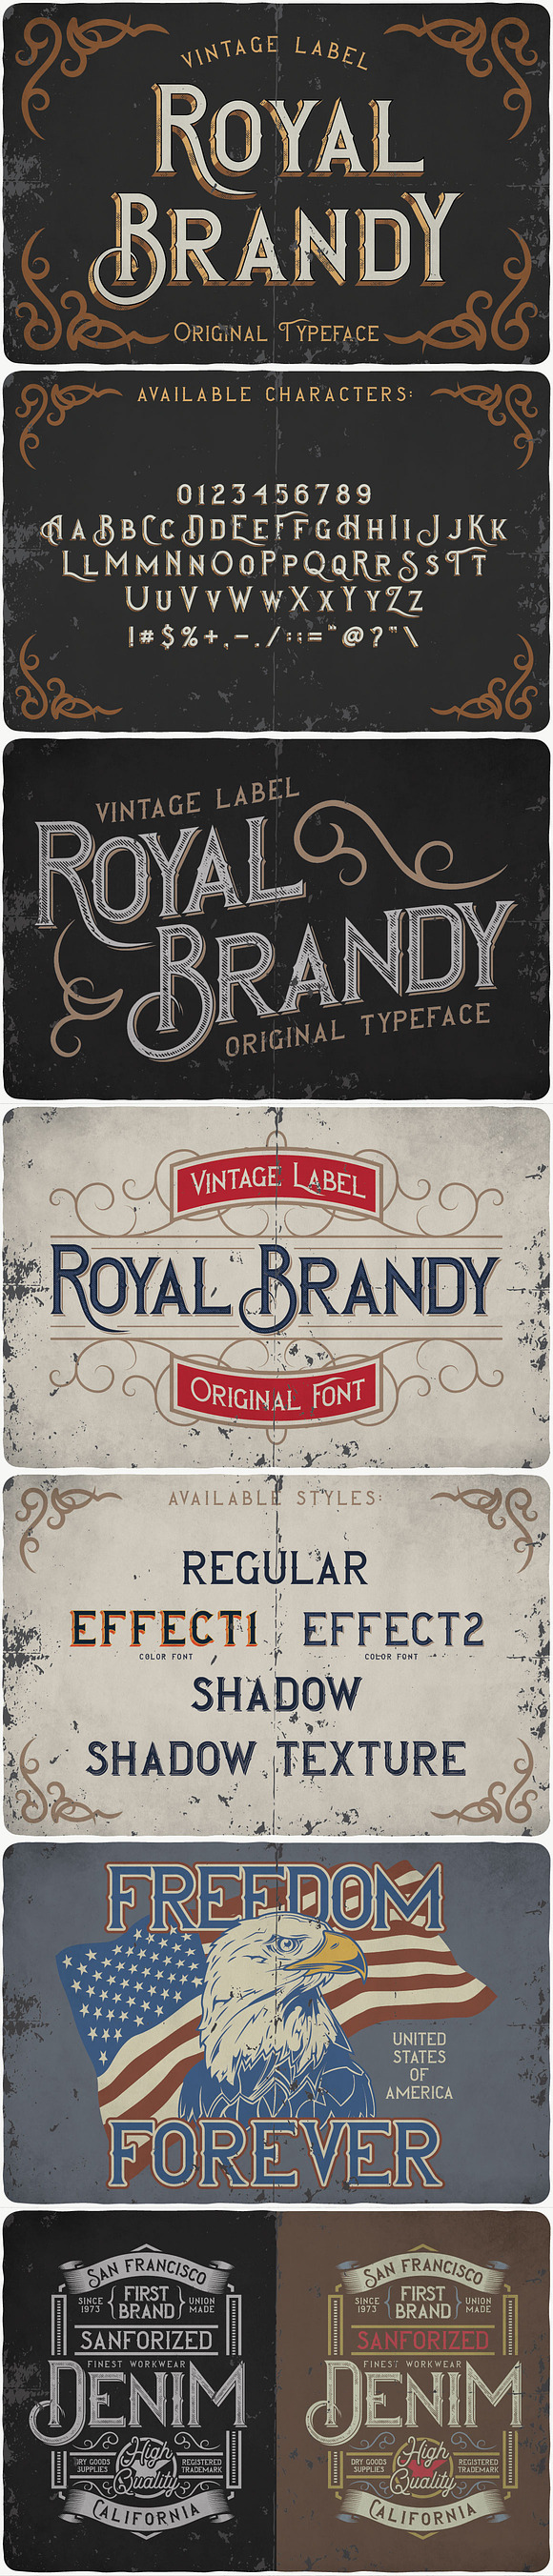 Vintage Fonts Bundle in Vintage Fonts - product preview 13